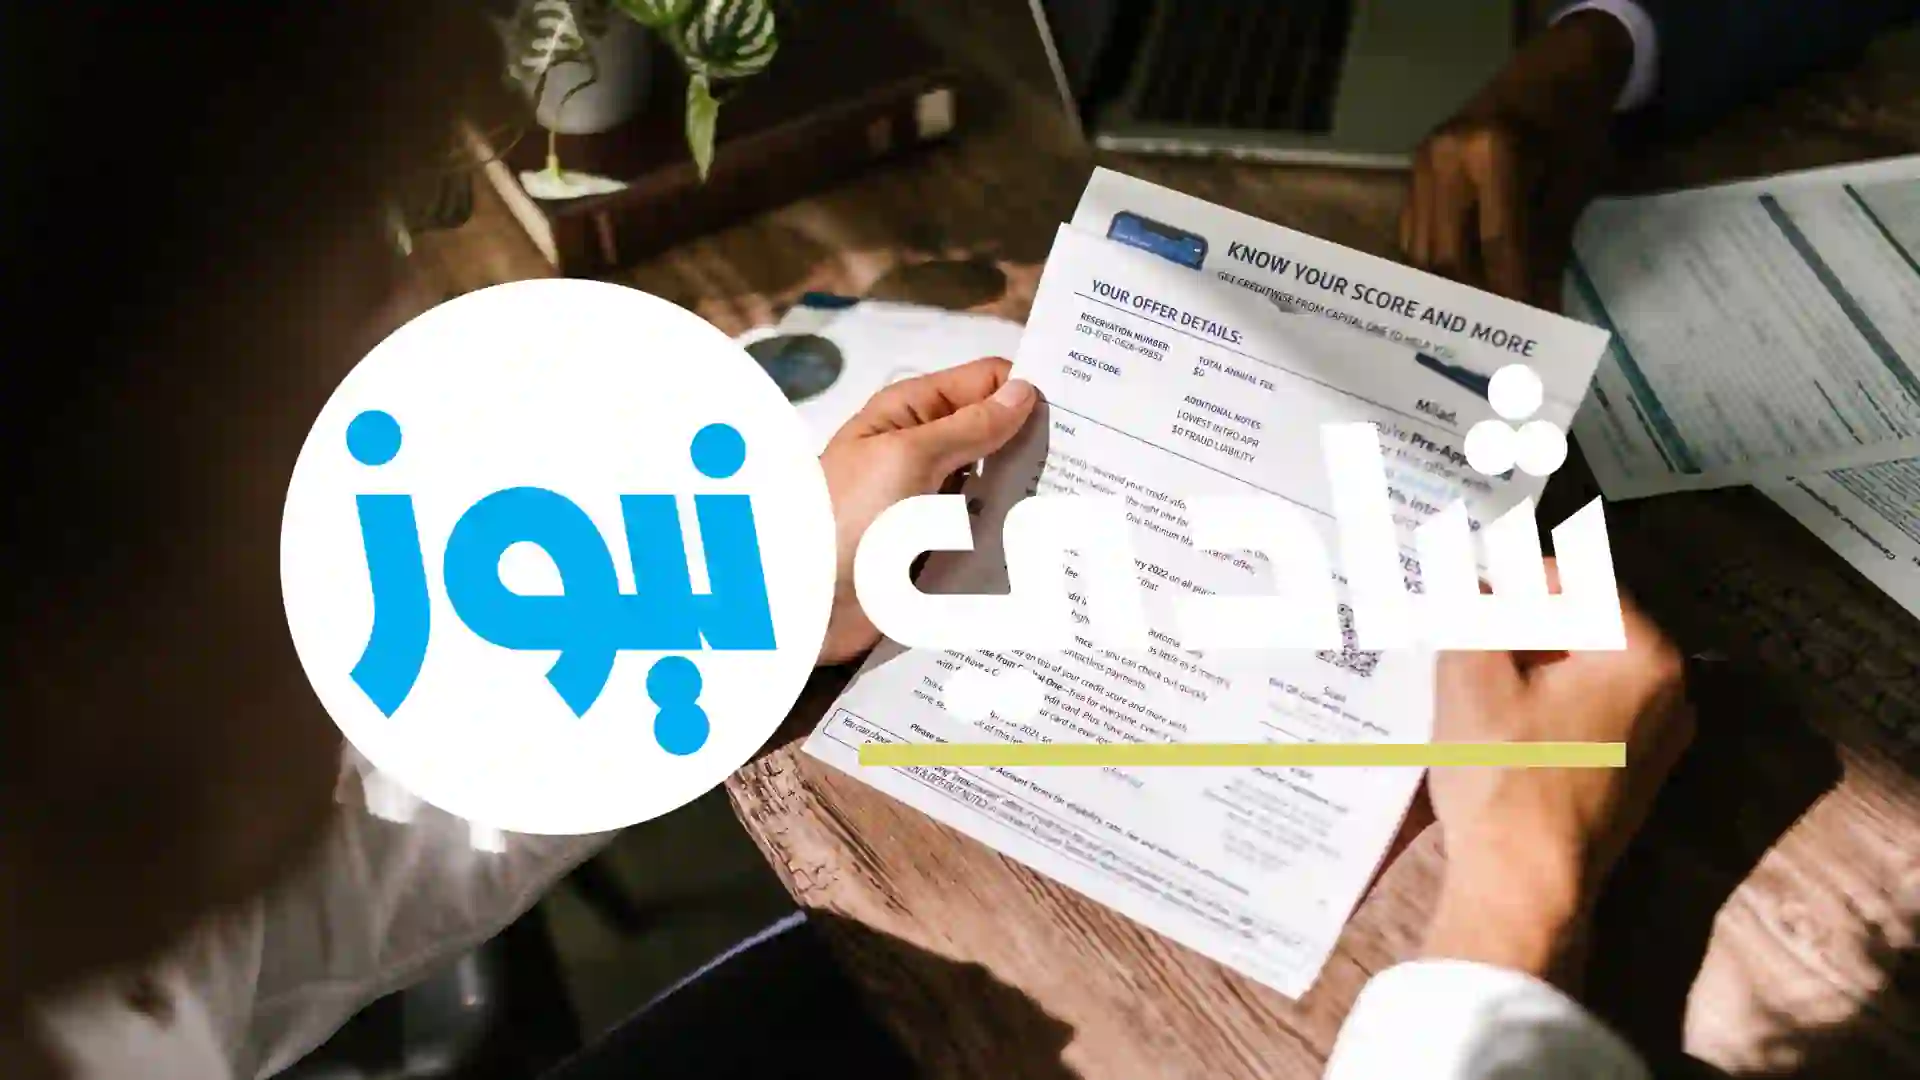 التوظيف في القطاع الخاص 2022 .. Al Amana Microfinance توظف عدة مناصب